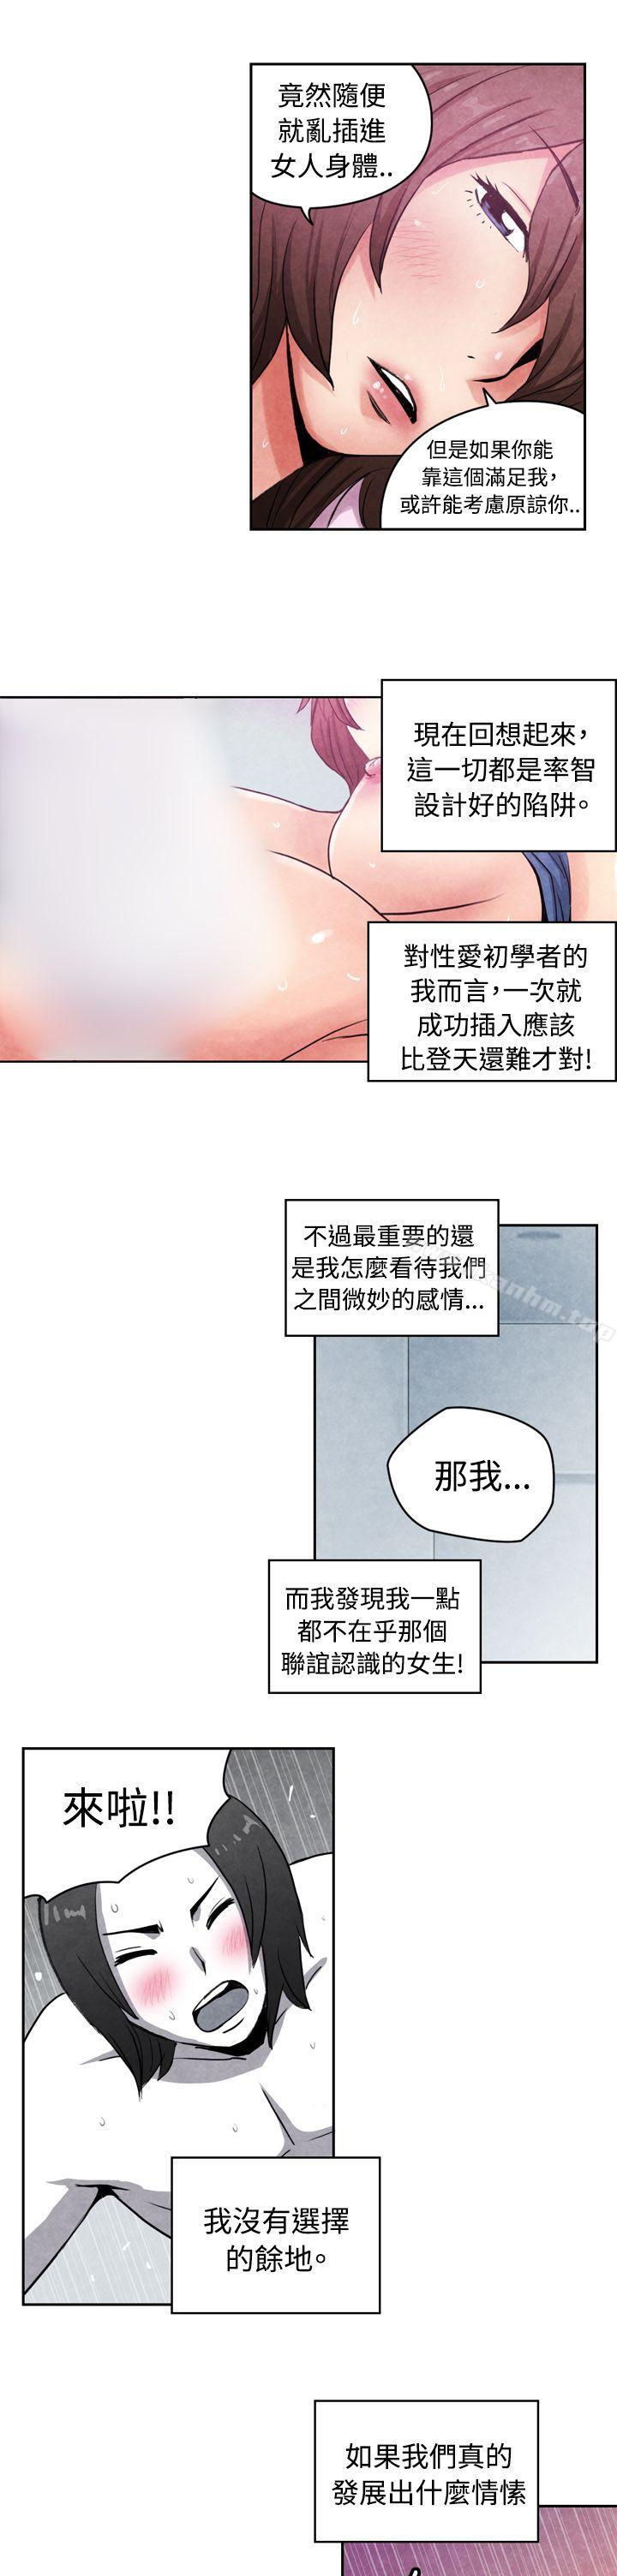 漫画韩国 生物學的女性攻略法   - 立即阅读 生物學的女性攻略法 CASE 16-2. 擦屁股之神第8漫画图片